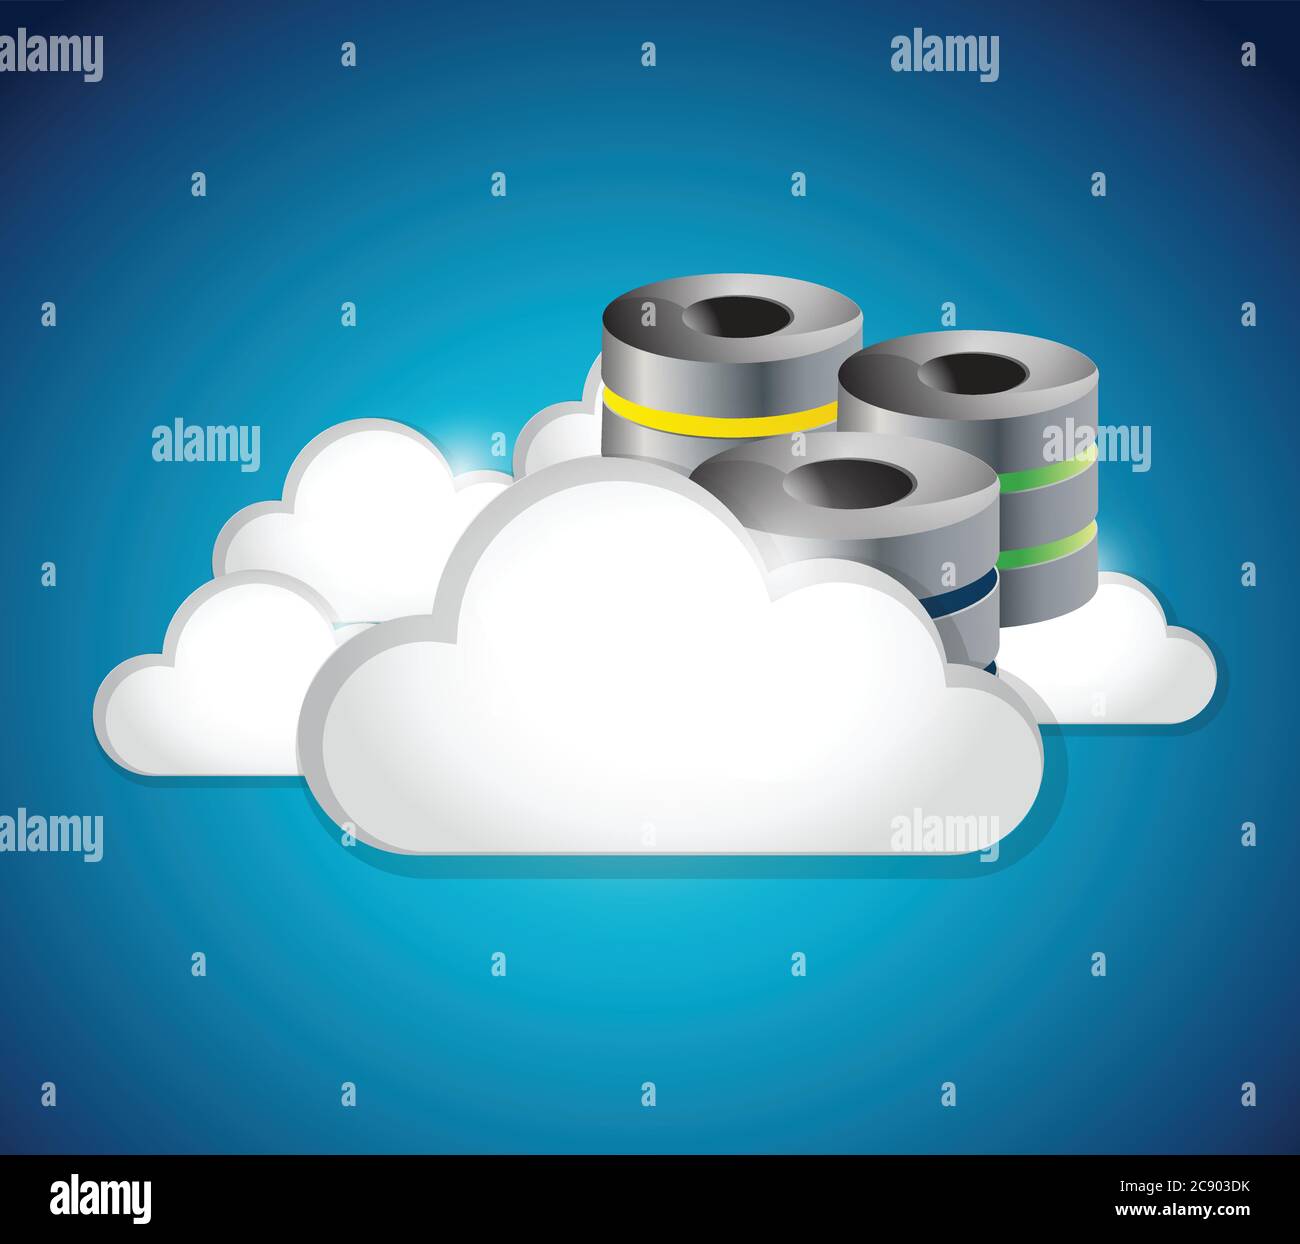 Server clouds illustration design over a blue background Stock Vector